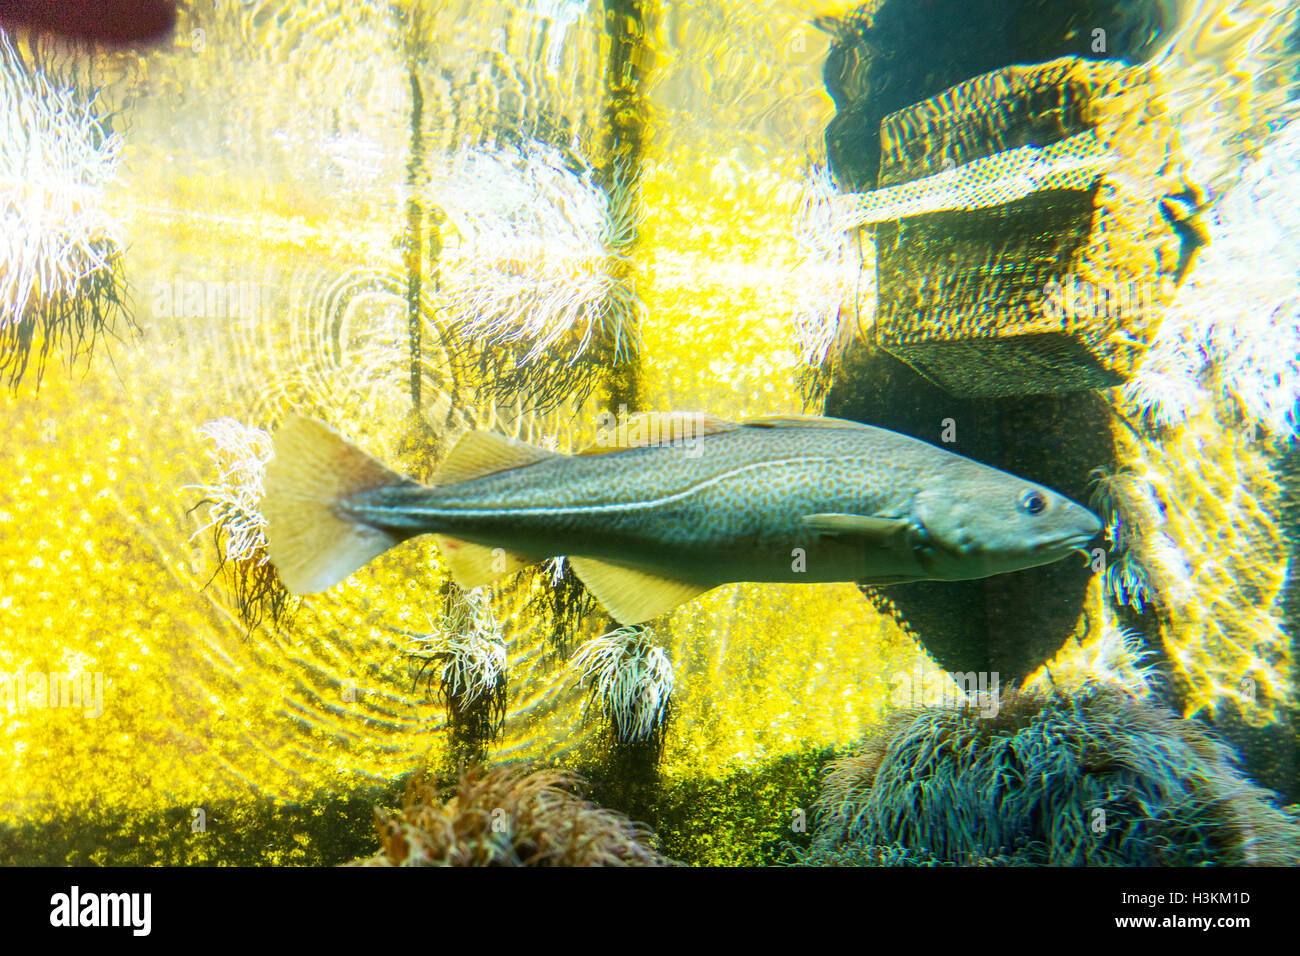 La Morue Gadus morrhua codfishes poissons Poissons de mer vue de côté de l'océan sous-marine fish GO UK Angleterre Banque D'Images